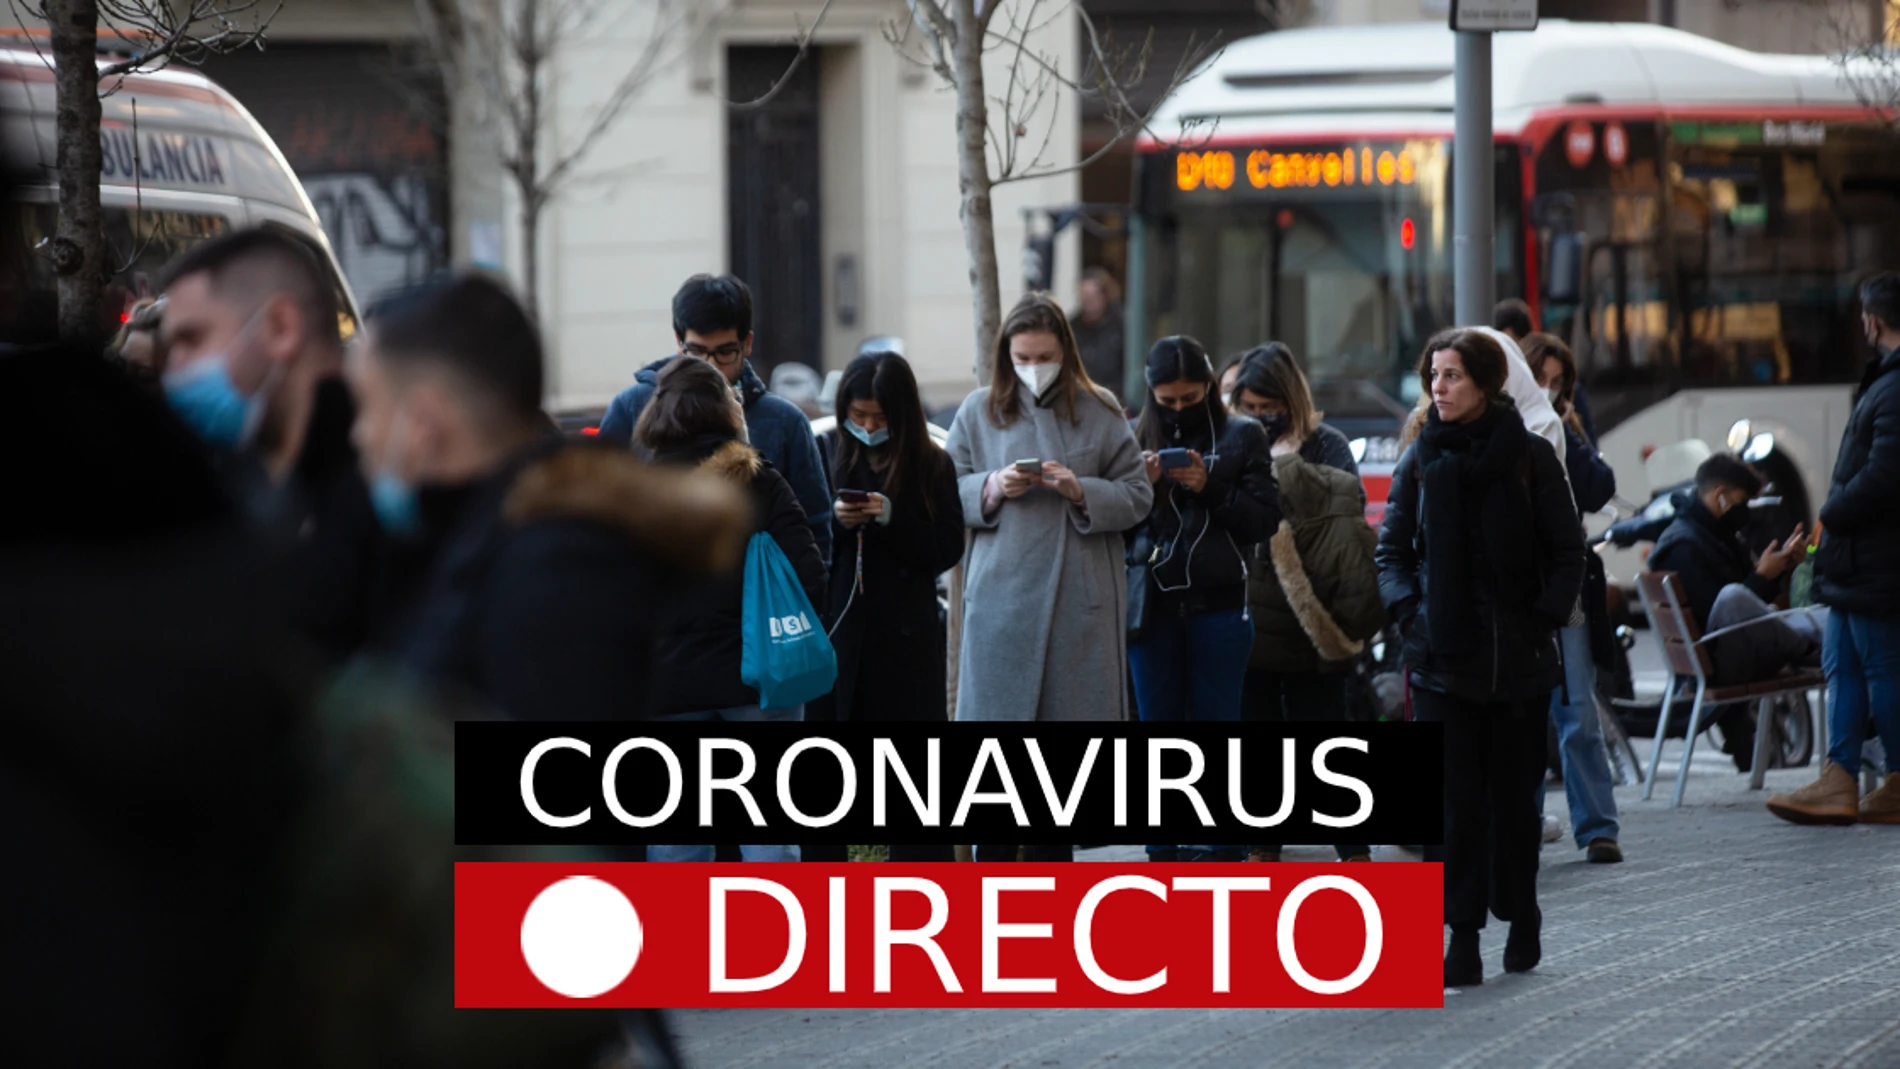 Coronavirus, hoy: Noticias de última hora en España y el mundo, en directo